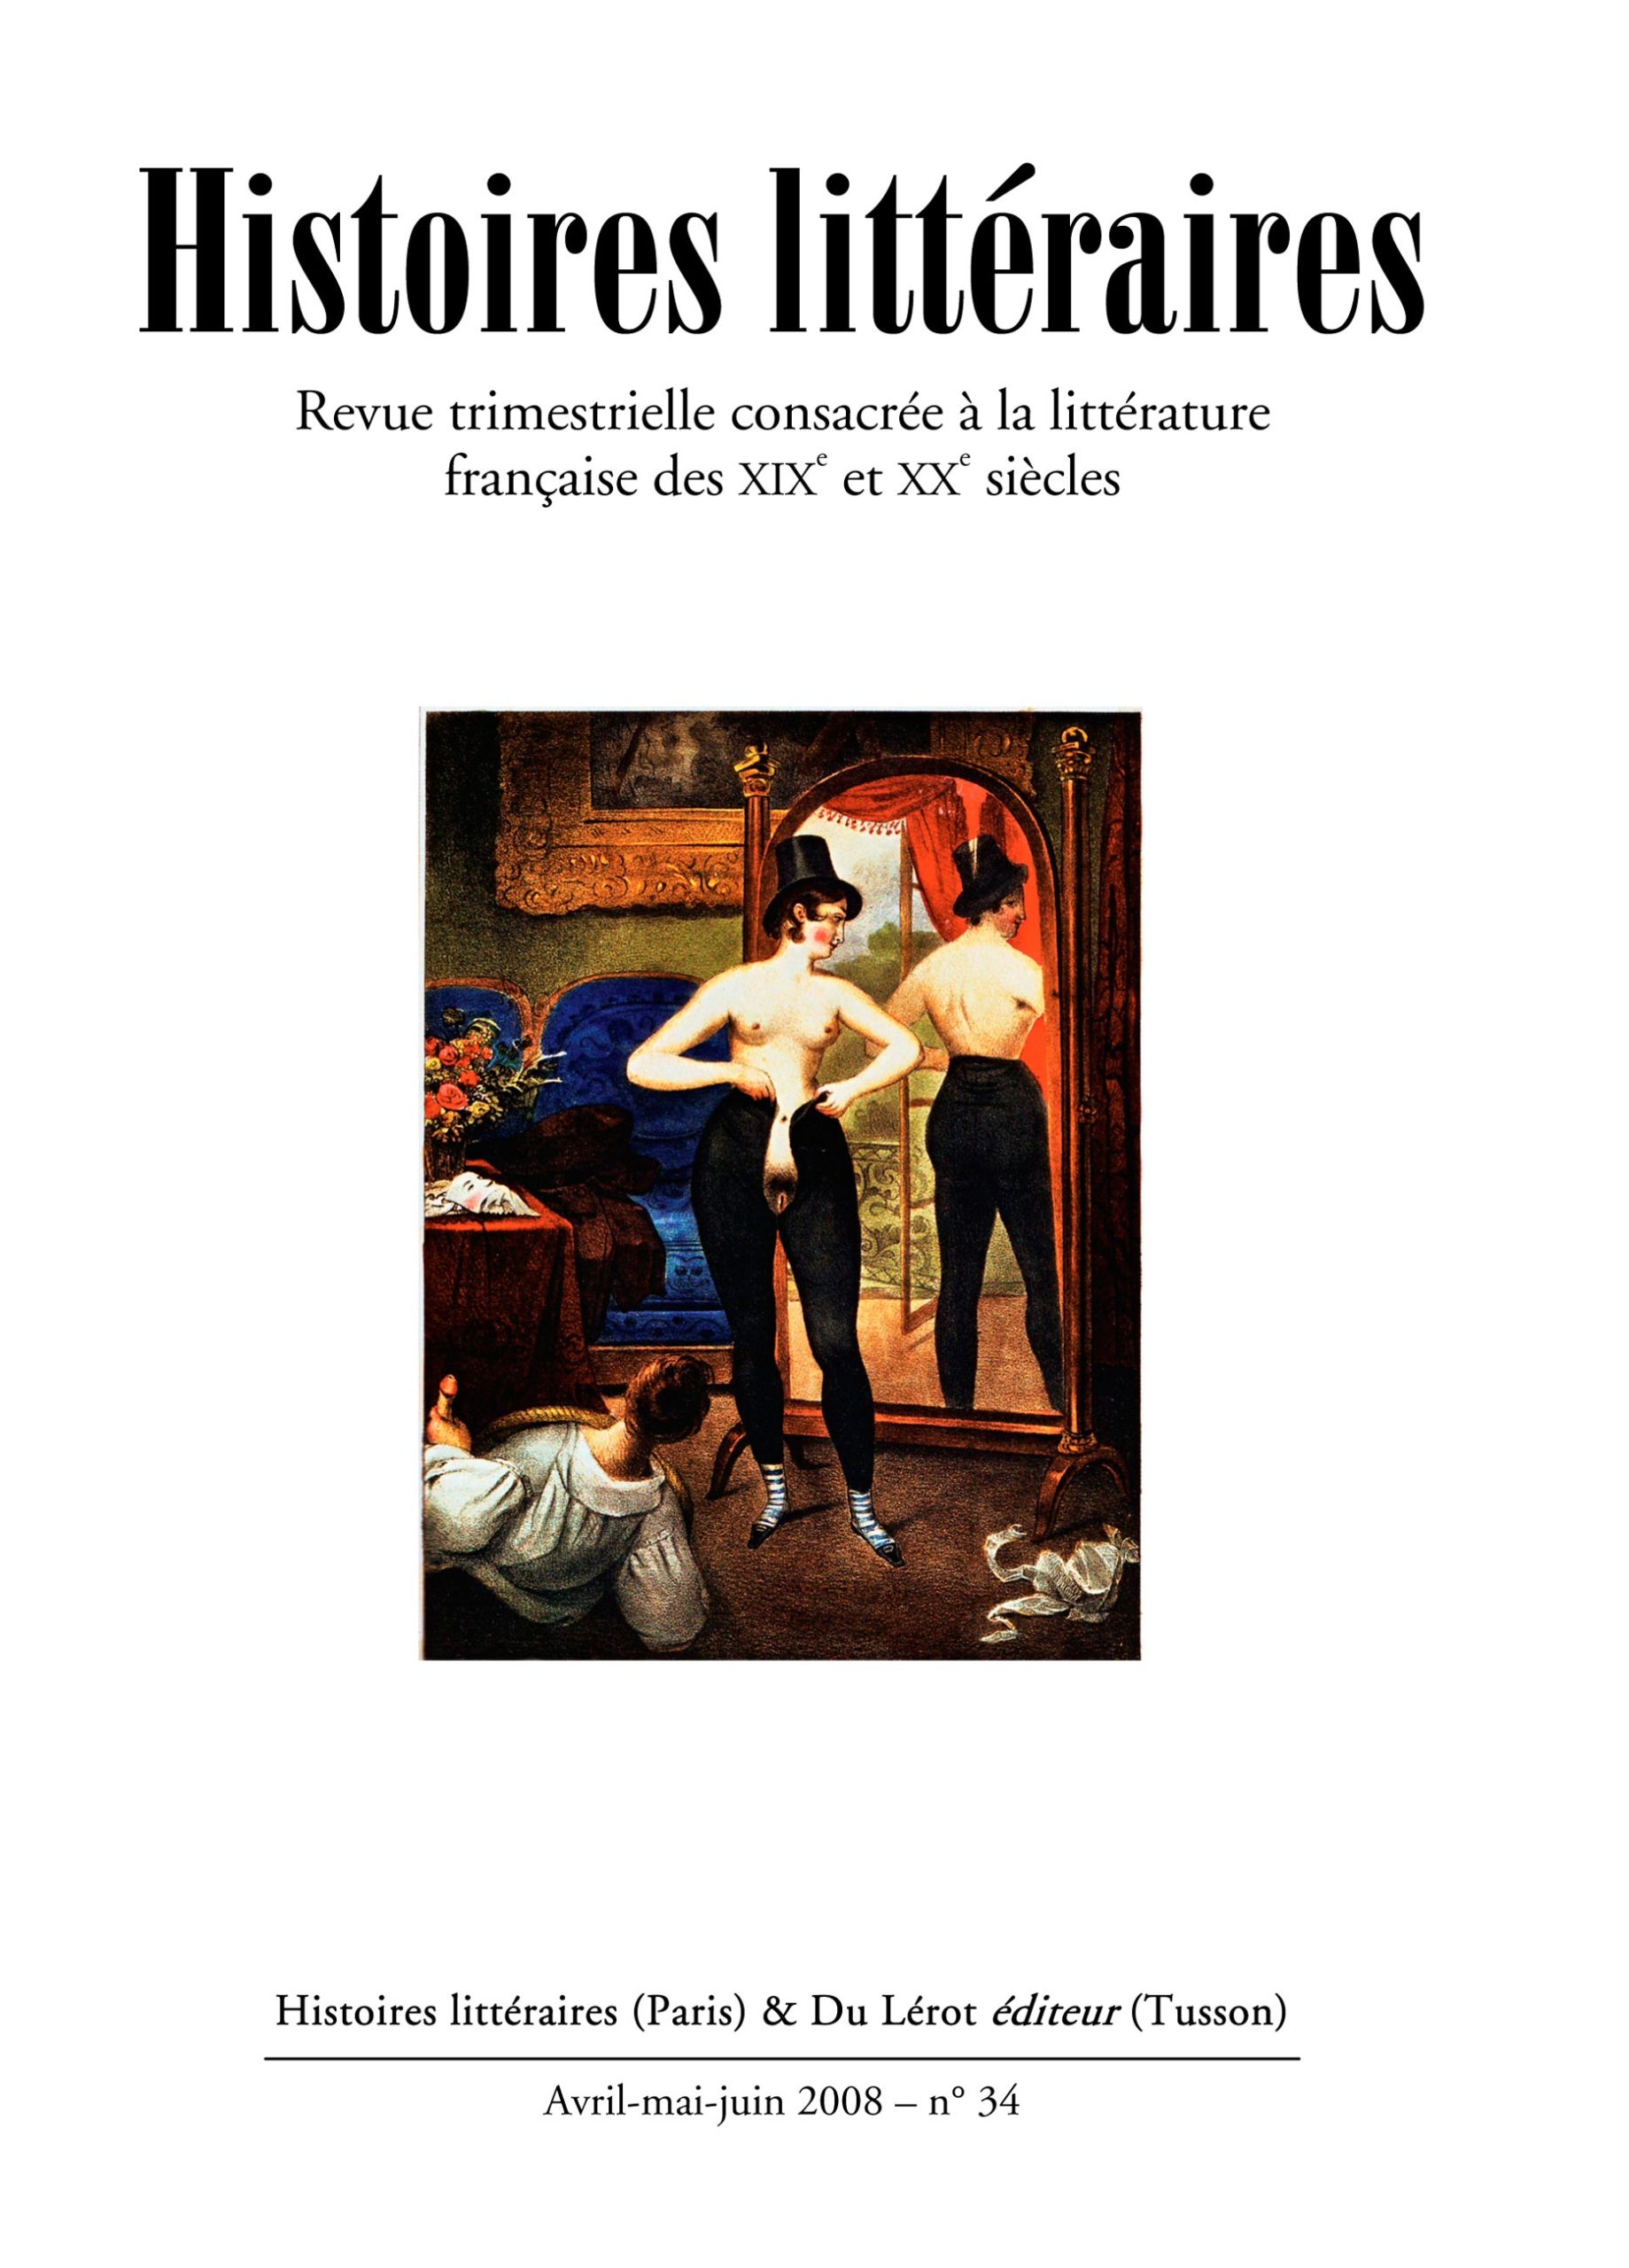 Couvertures d'Histoires littéraires n°34